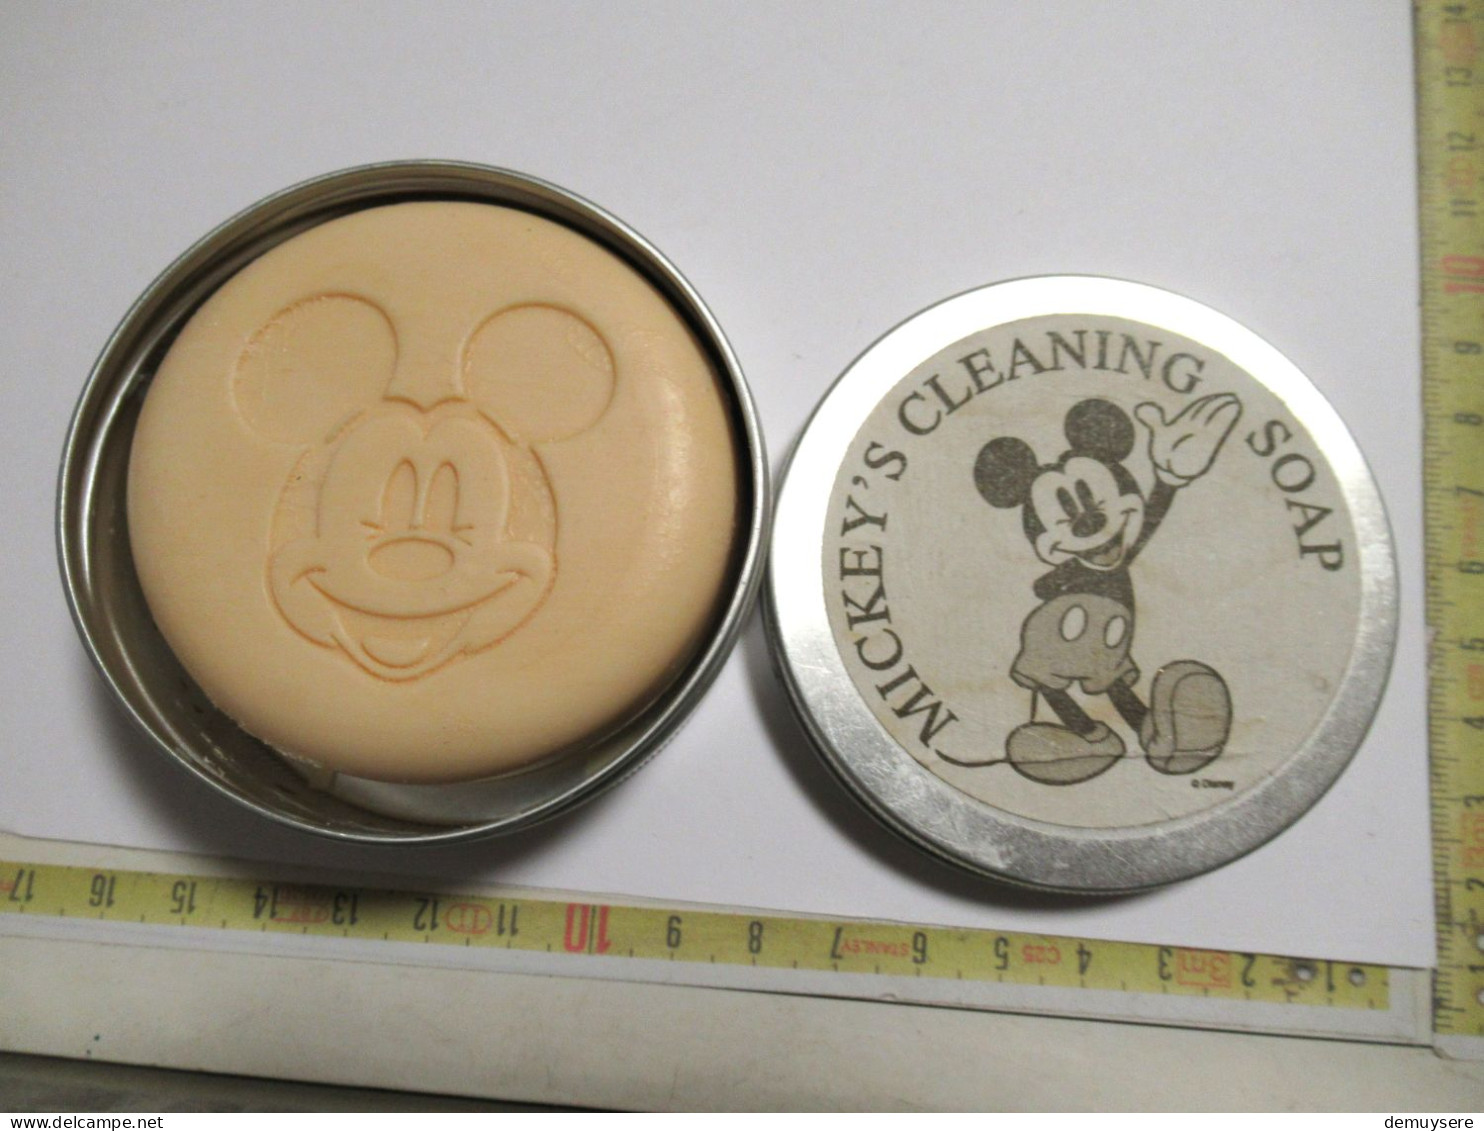 Lade 15 - Mickey4s Cleaning Soap - Produits De Beauté